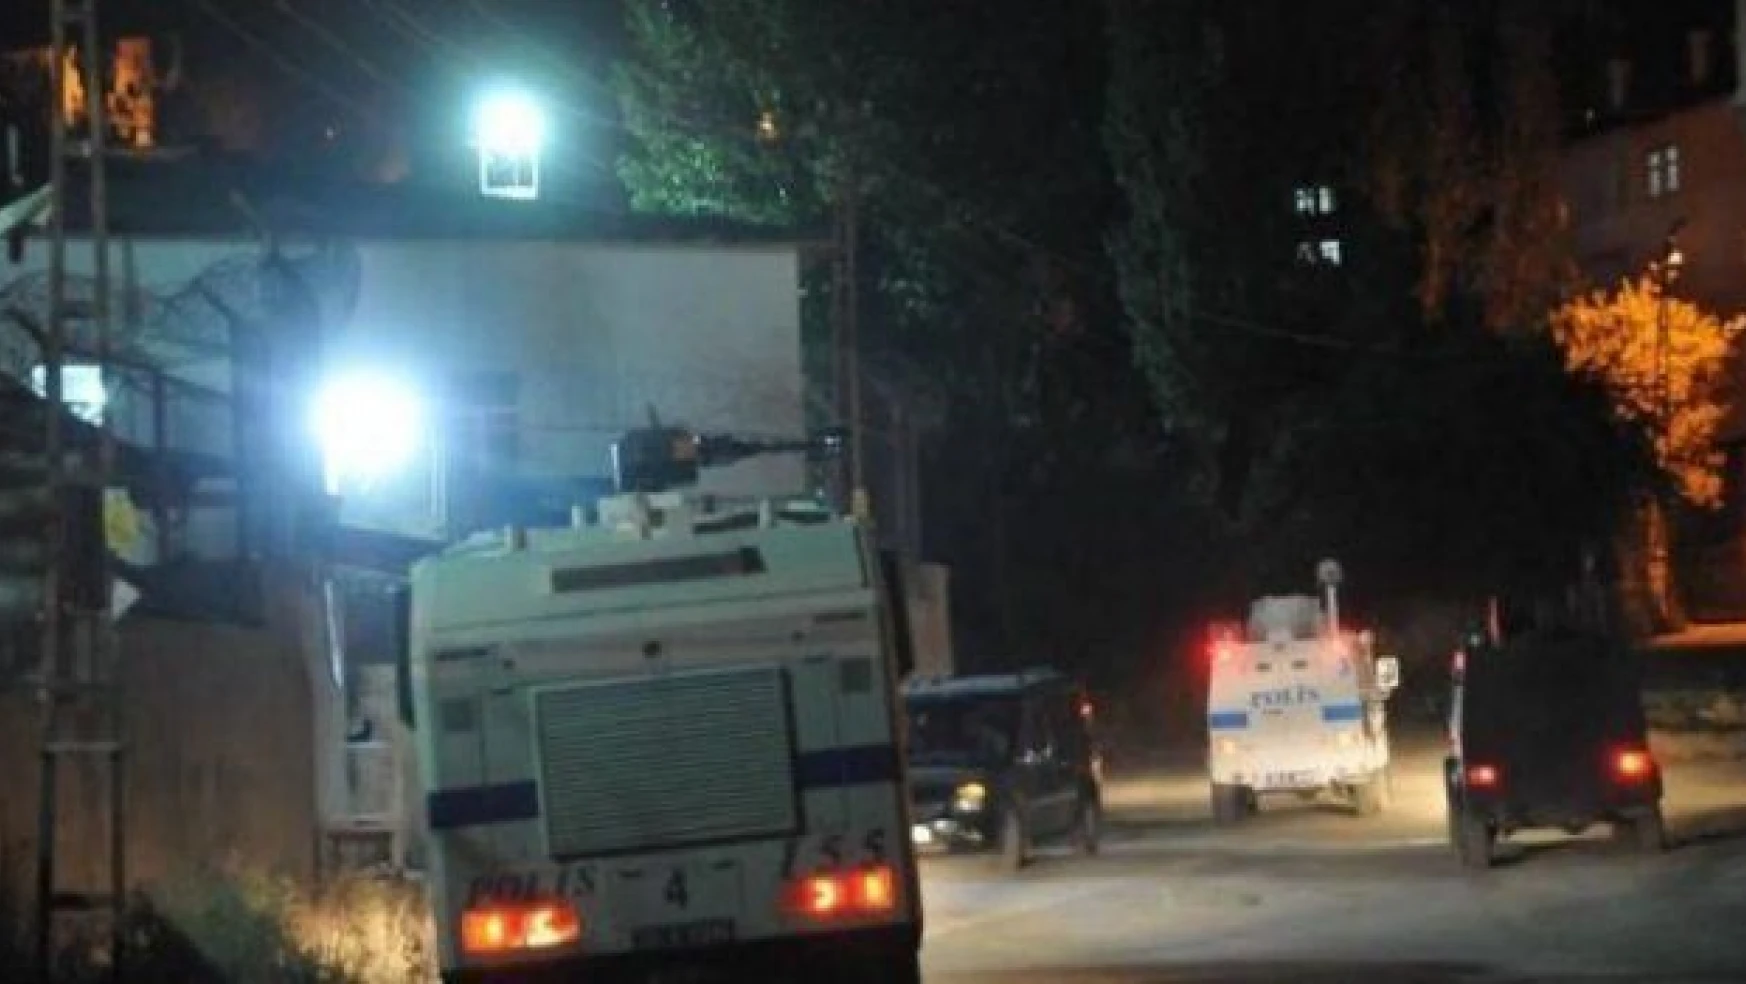 Zırhlı polis aracına roketatarlı saldırı: 5 polis yaralandı, 1 terörist öldürüldü